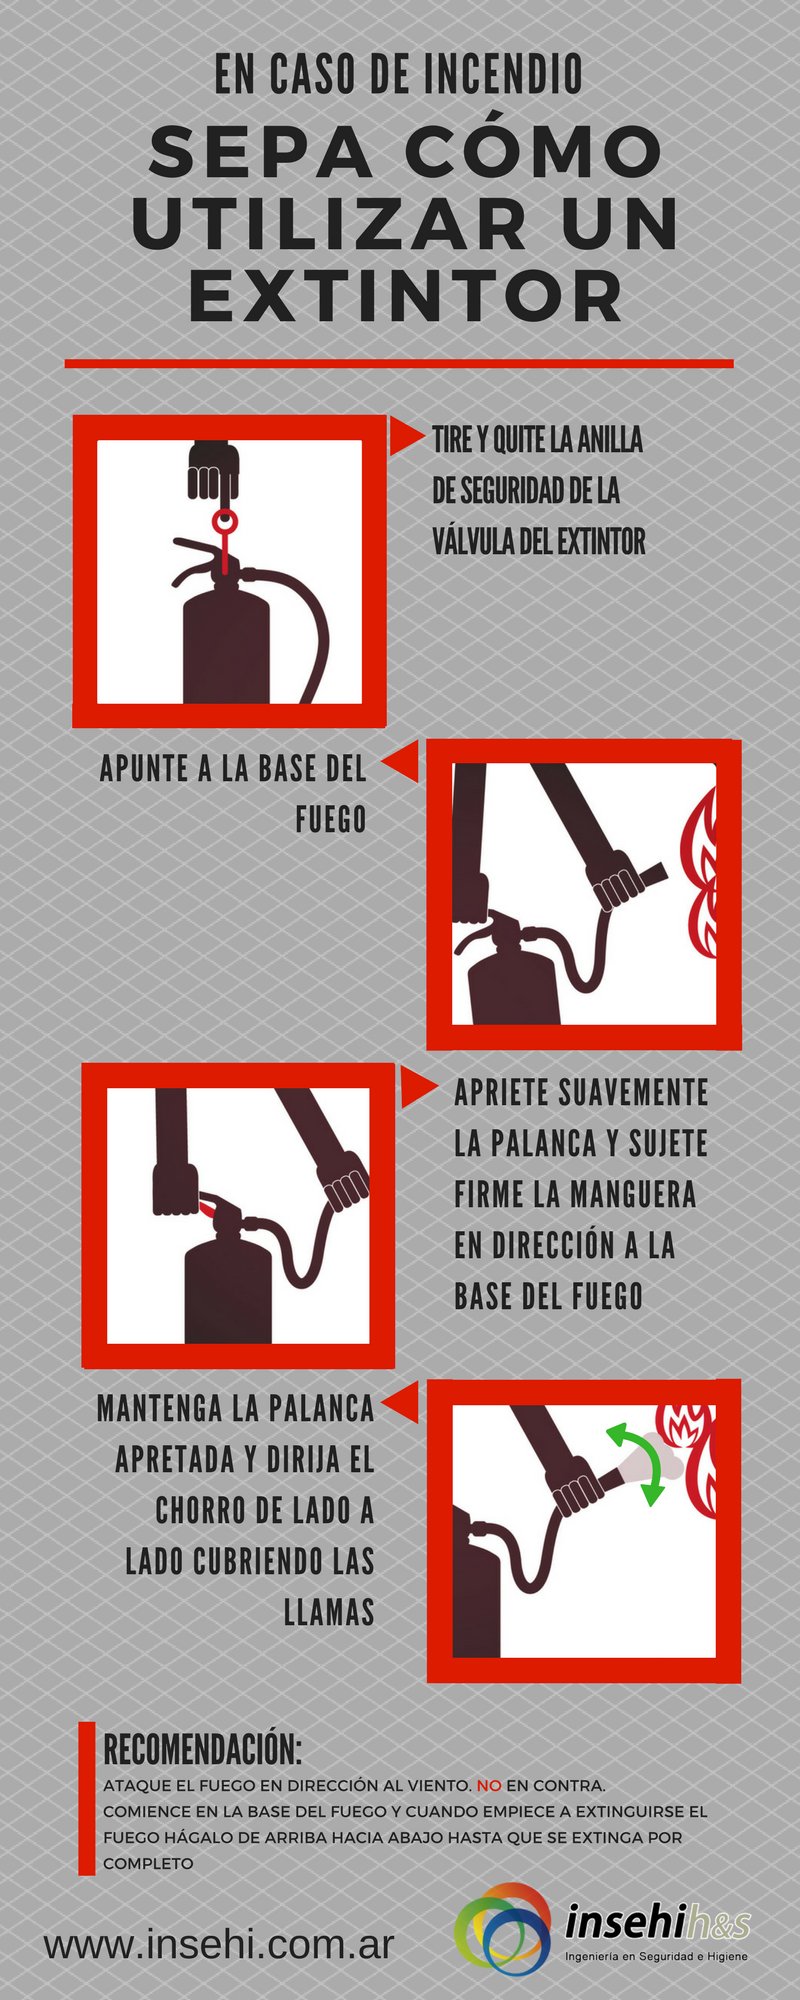 Cómo utilizar un extintor en caso de incendio